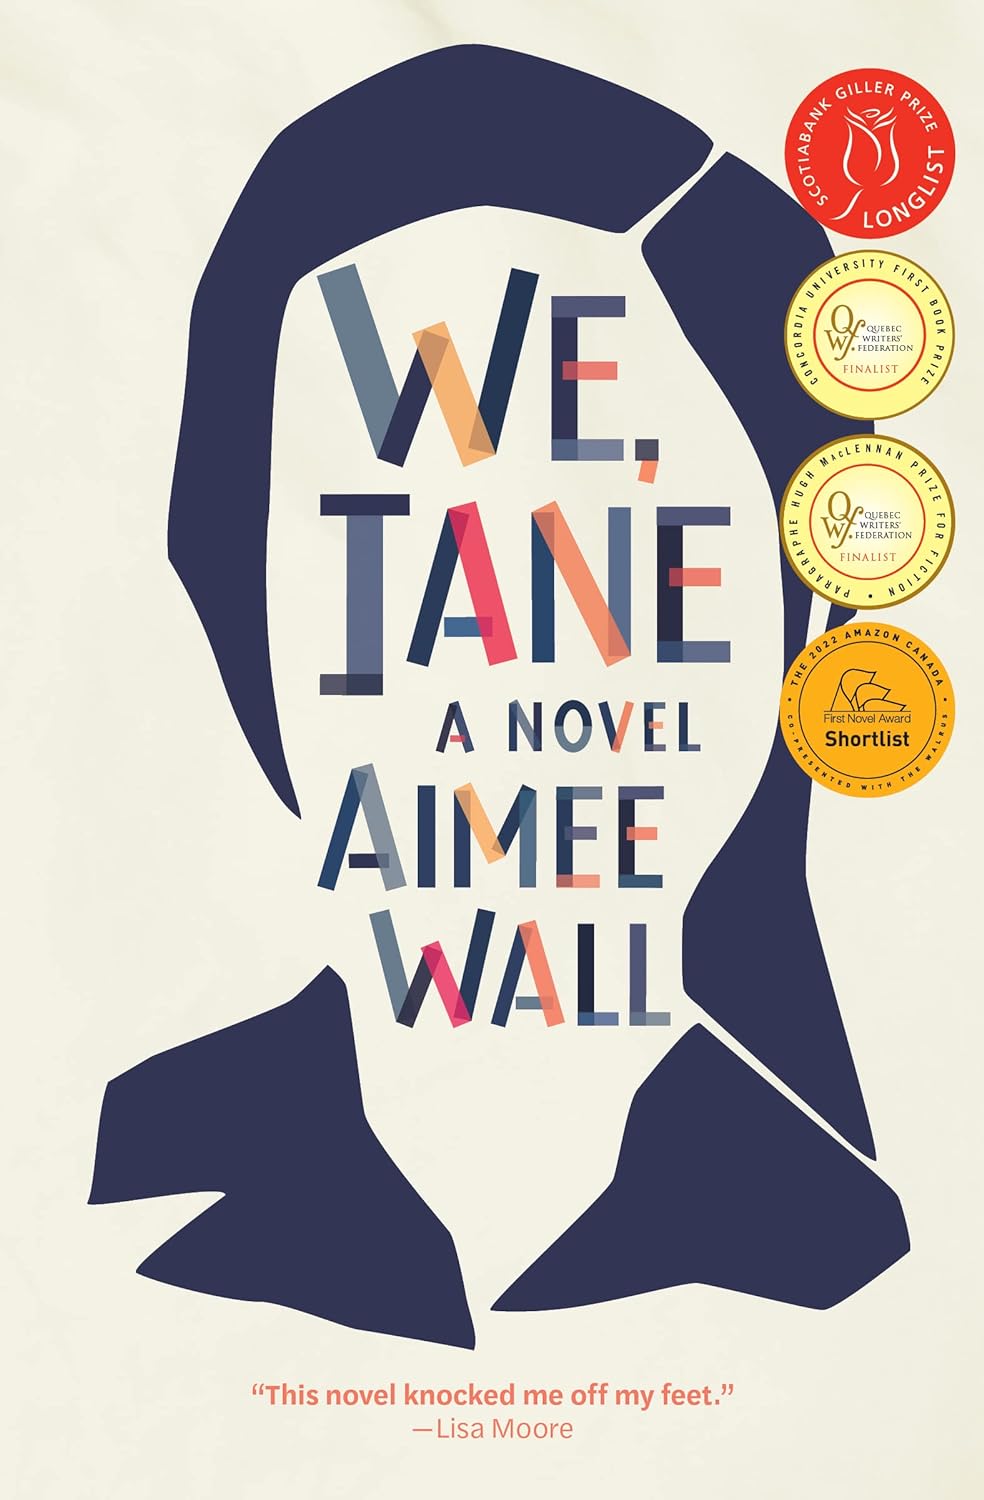 We, Jane - Aimee Wall